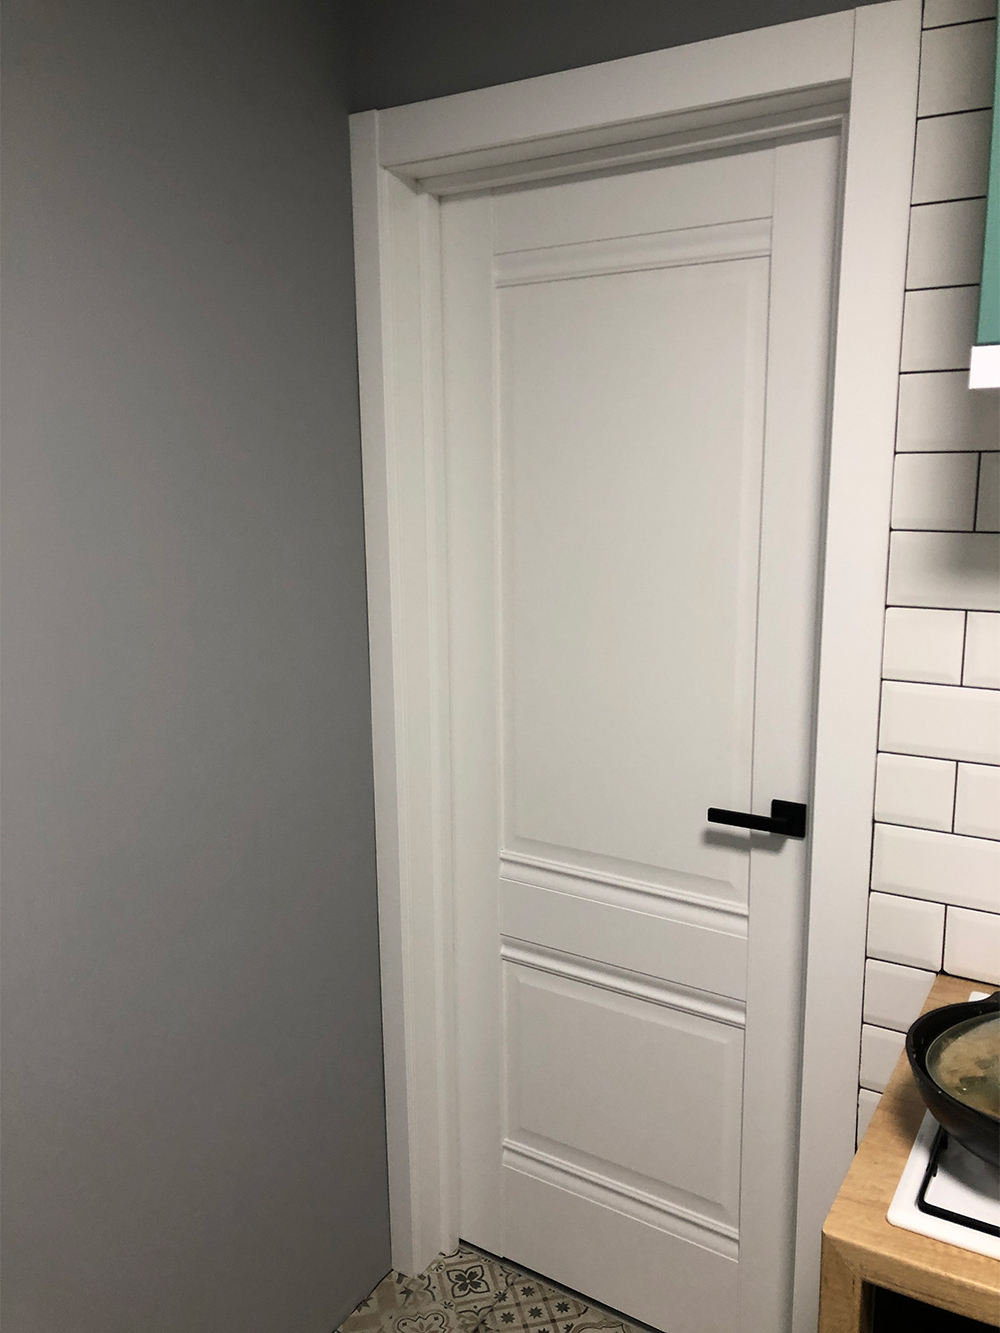 Я взяла белые двери, потому что они сочетаются с любыми стенами, полом и мебелью